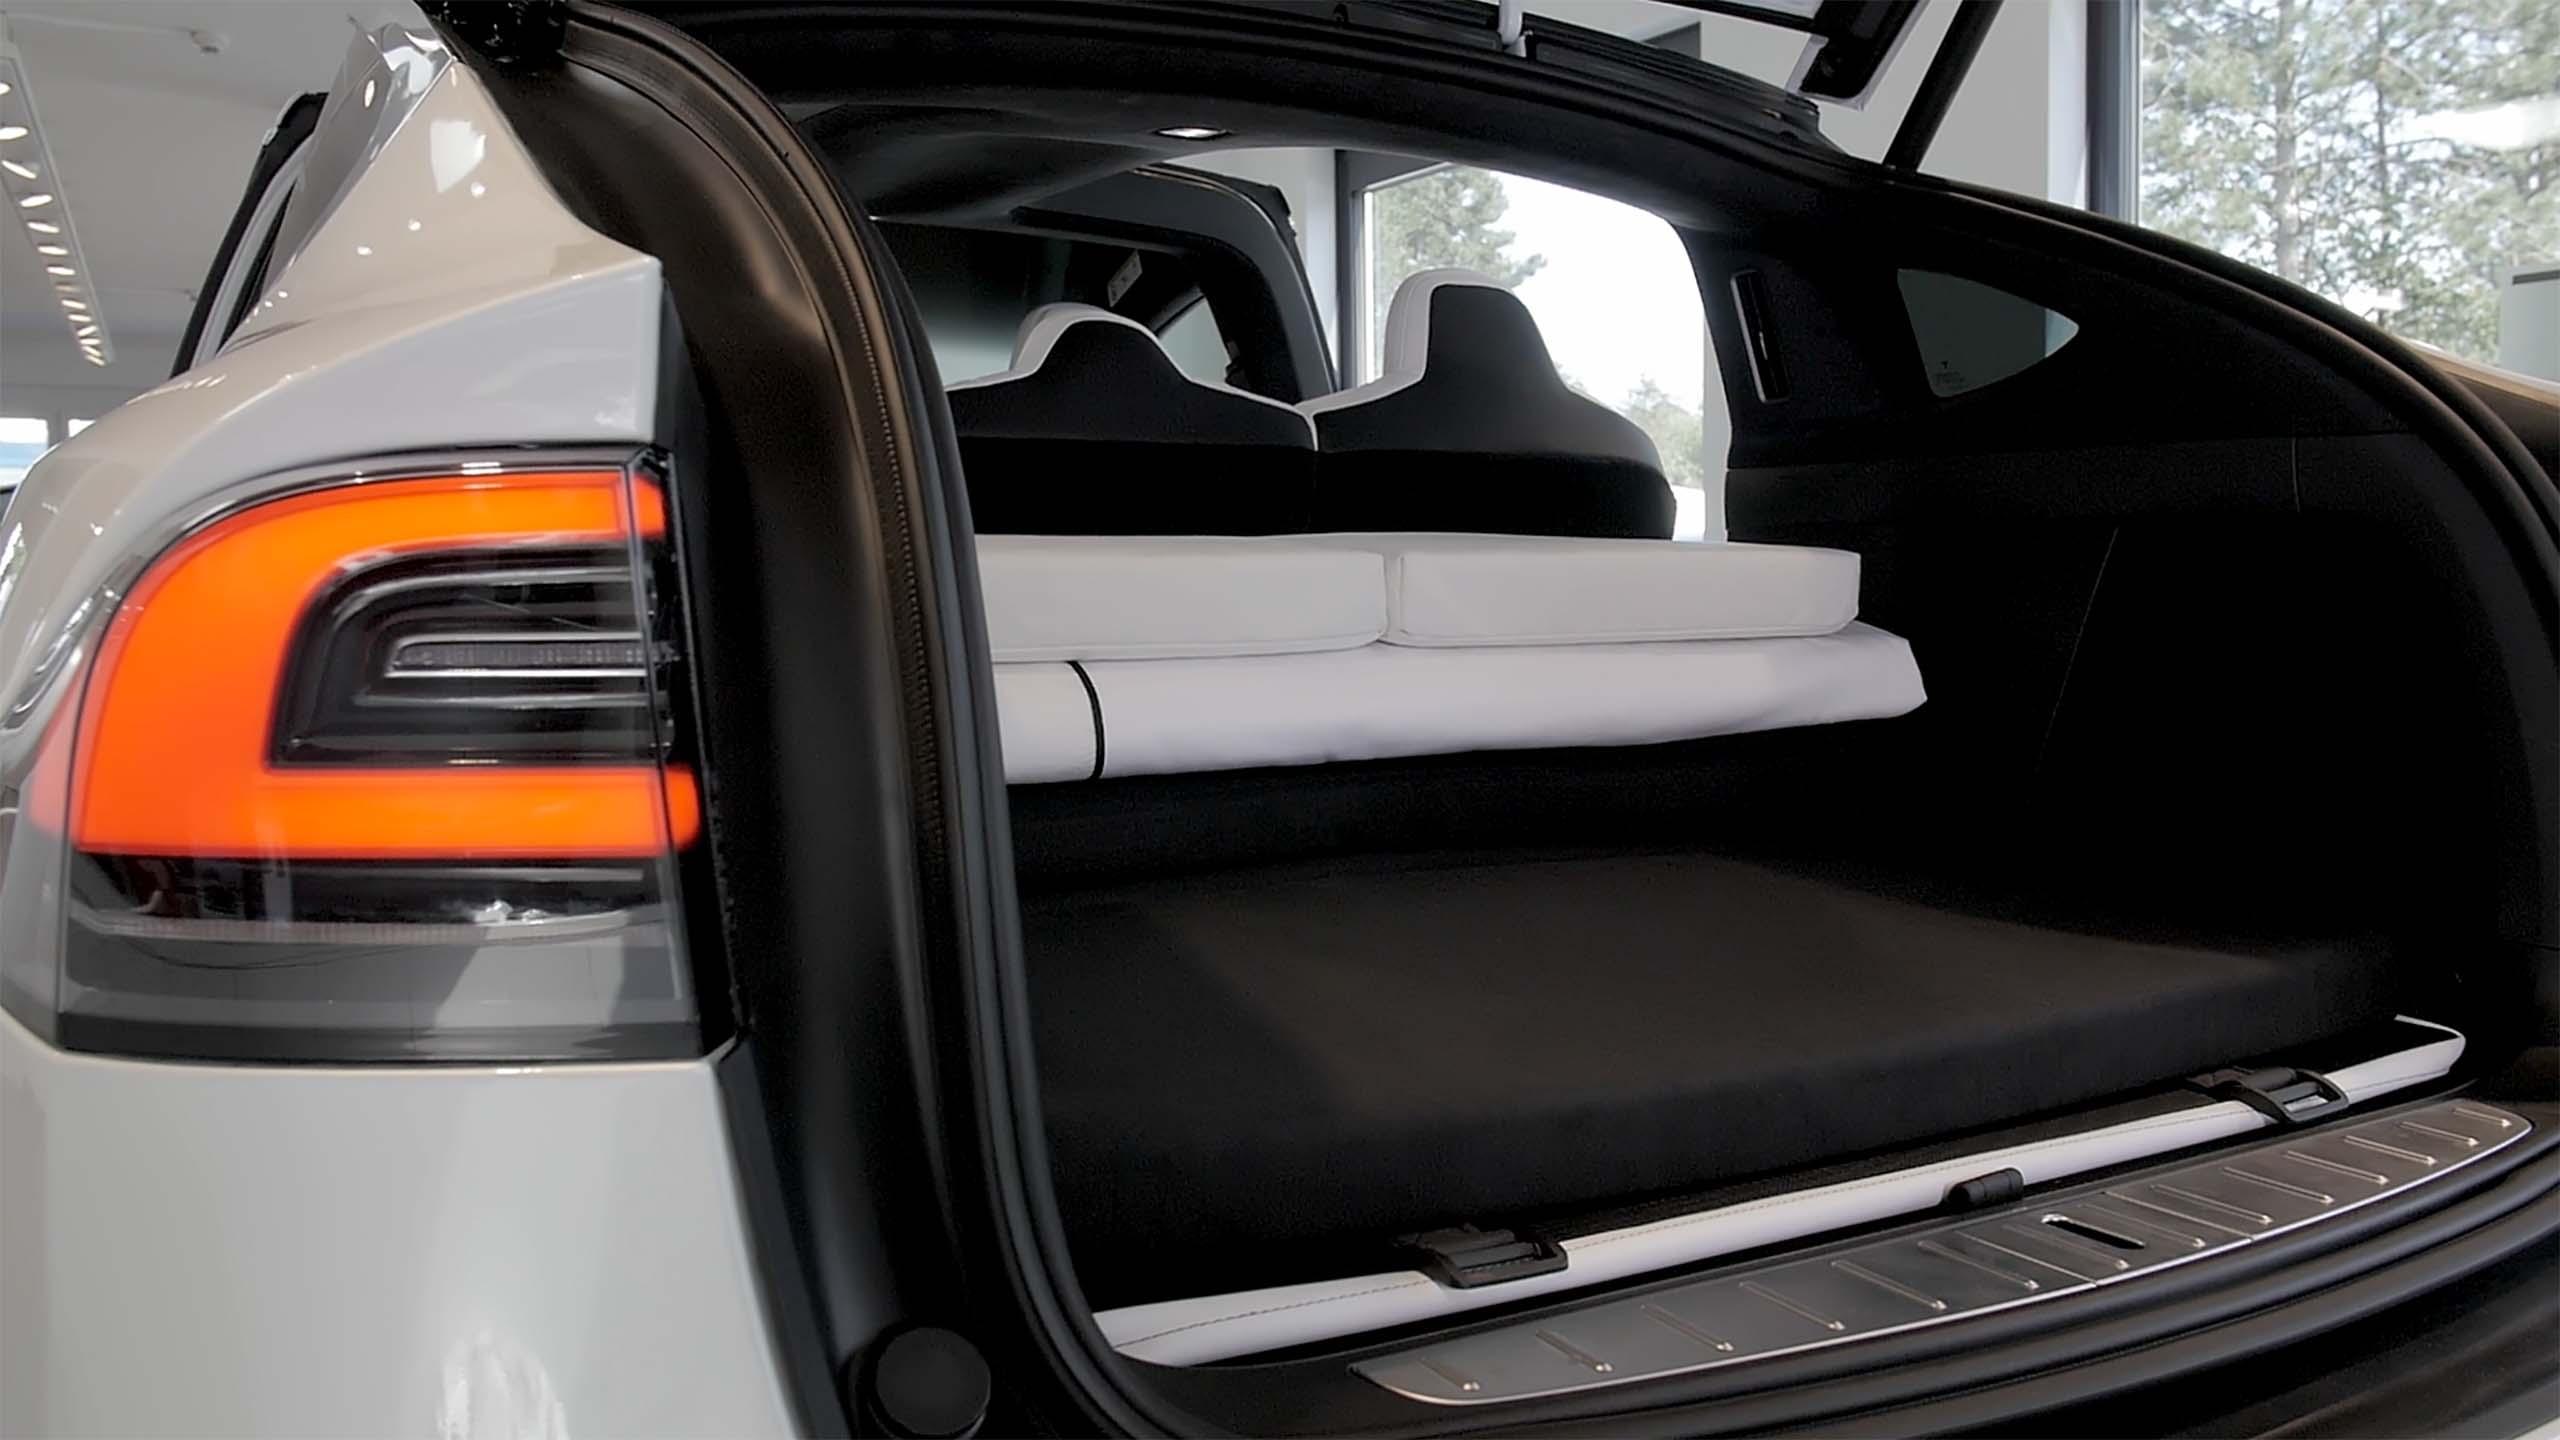 Dreamcase premium matras for Tesla Model 3 - Tesland